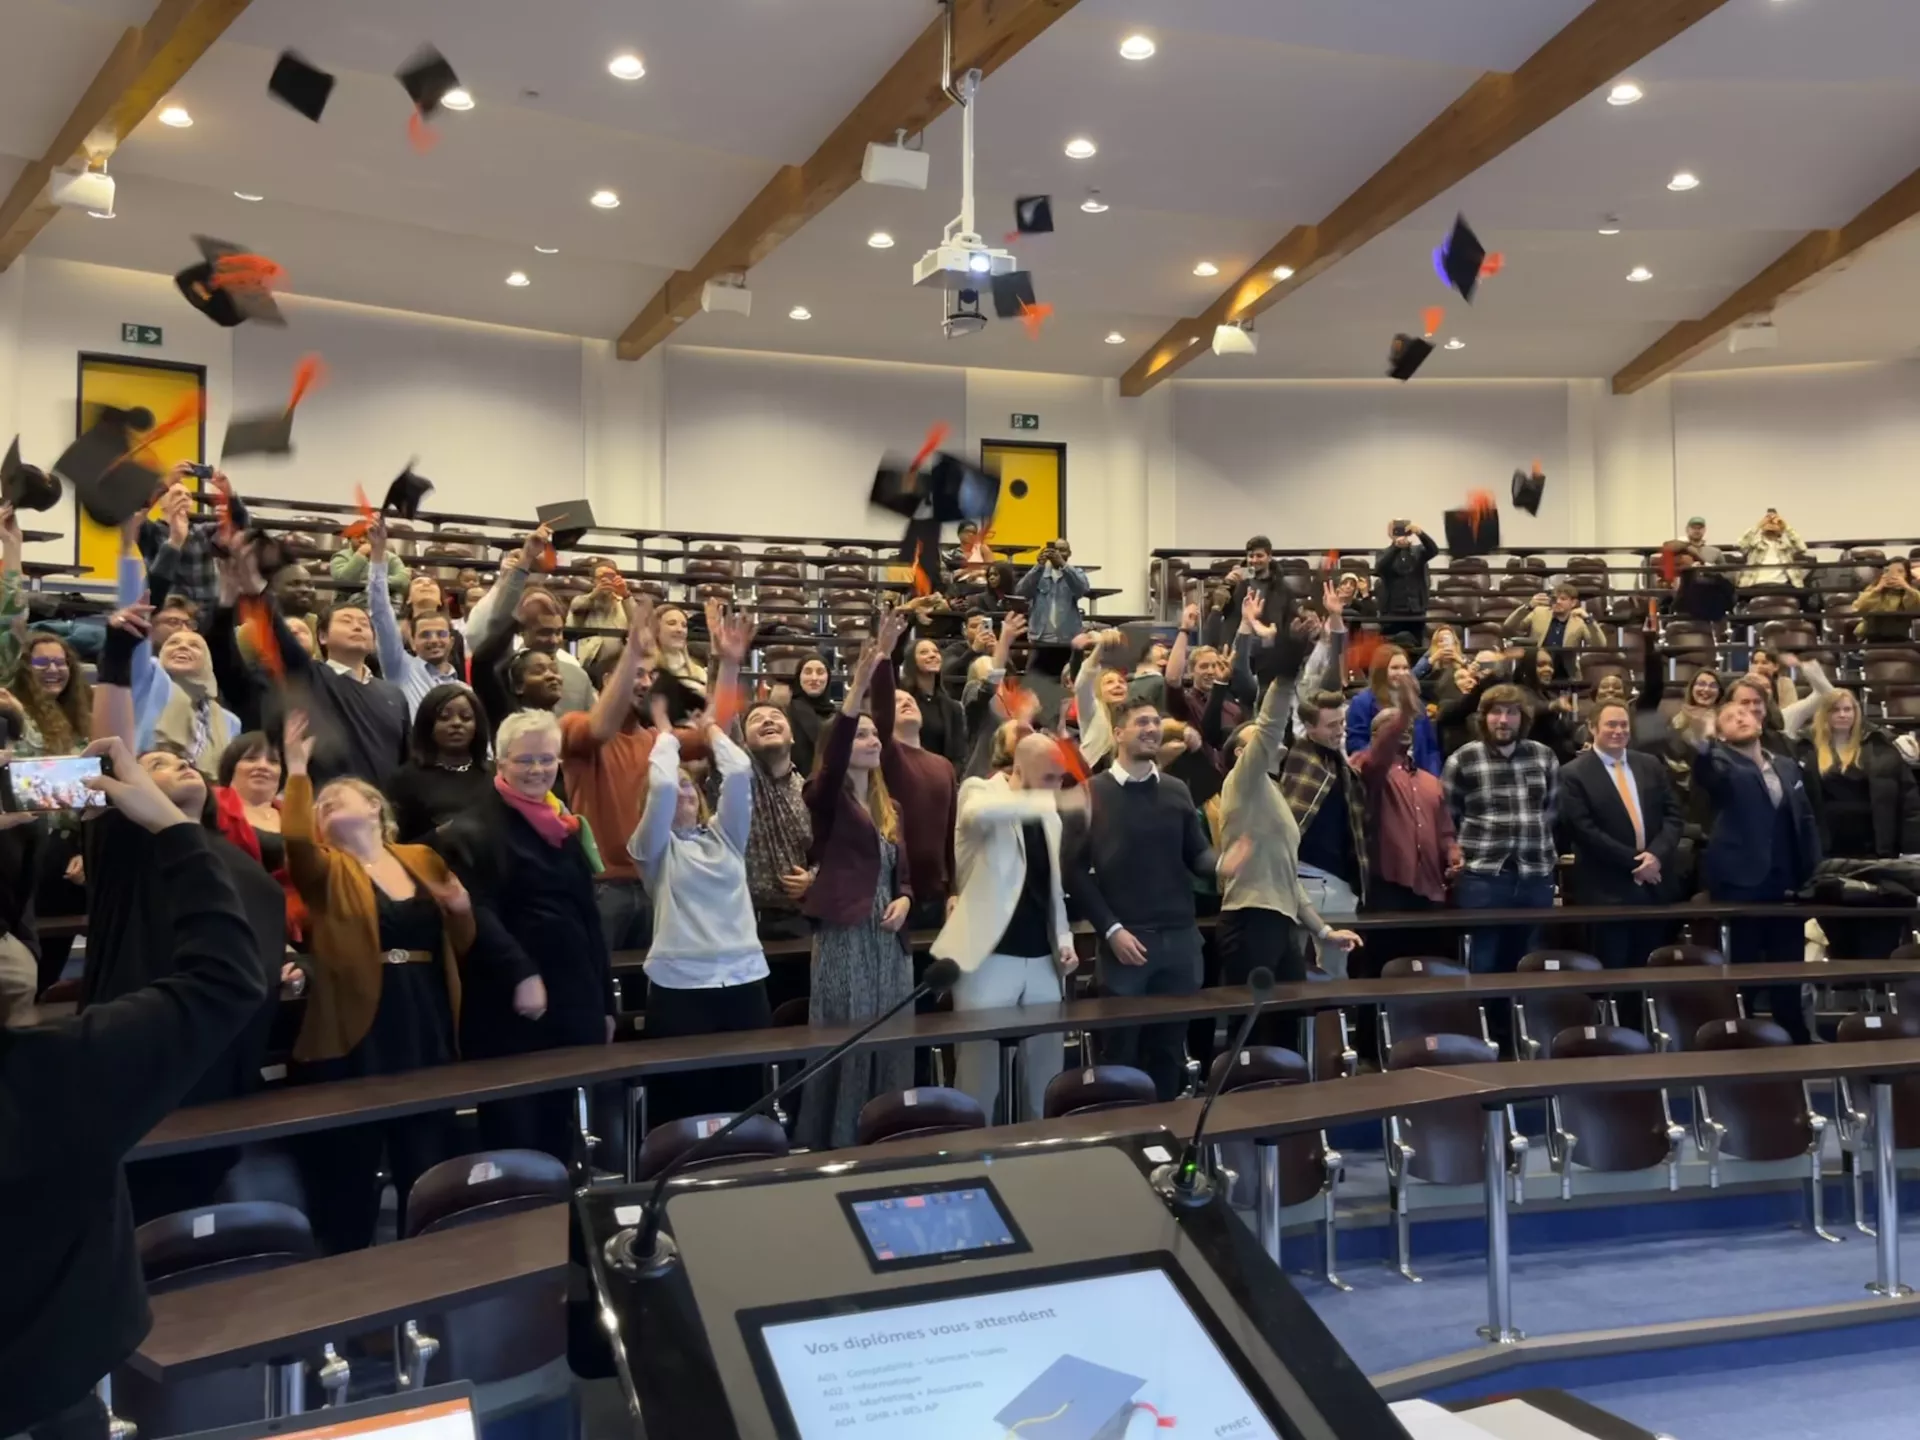 Etudiants qui jettent leur chapeau en l'air, dans un auditoire